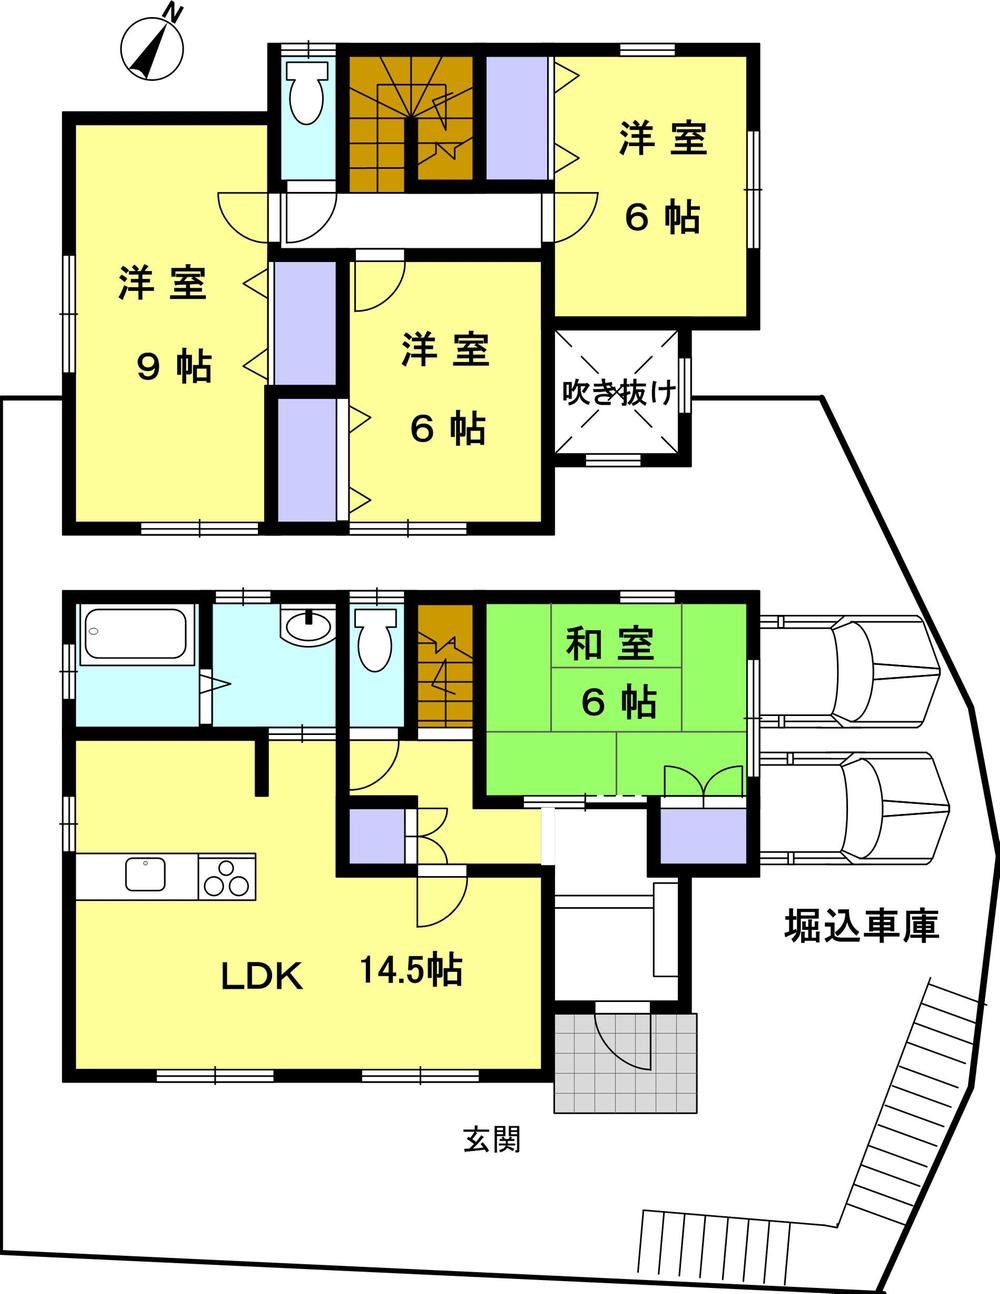 Floor plan. 14.8 million yen, 4LDK, Land area 139.48 sq m , Building area 127.53 sq m